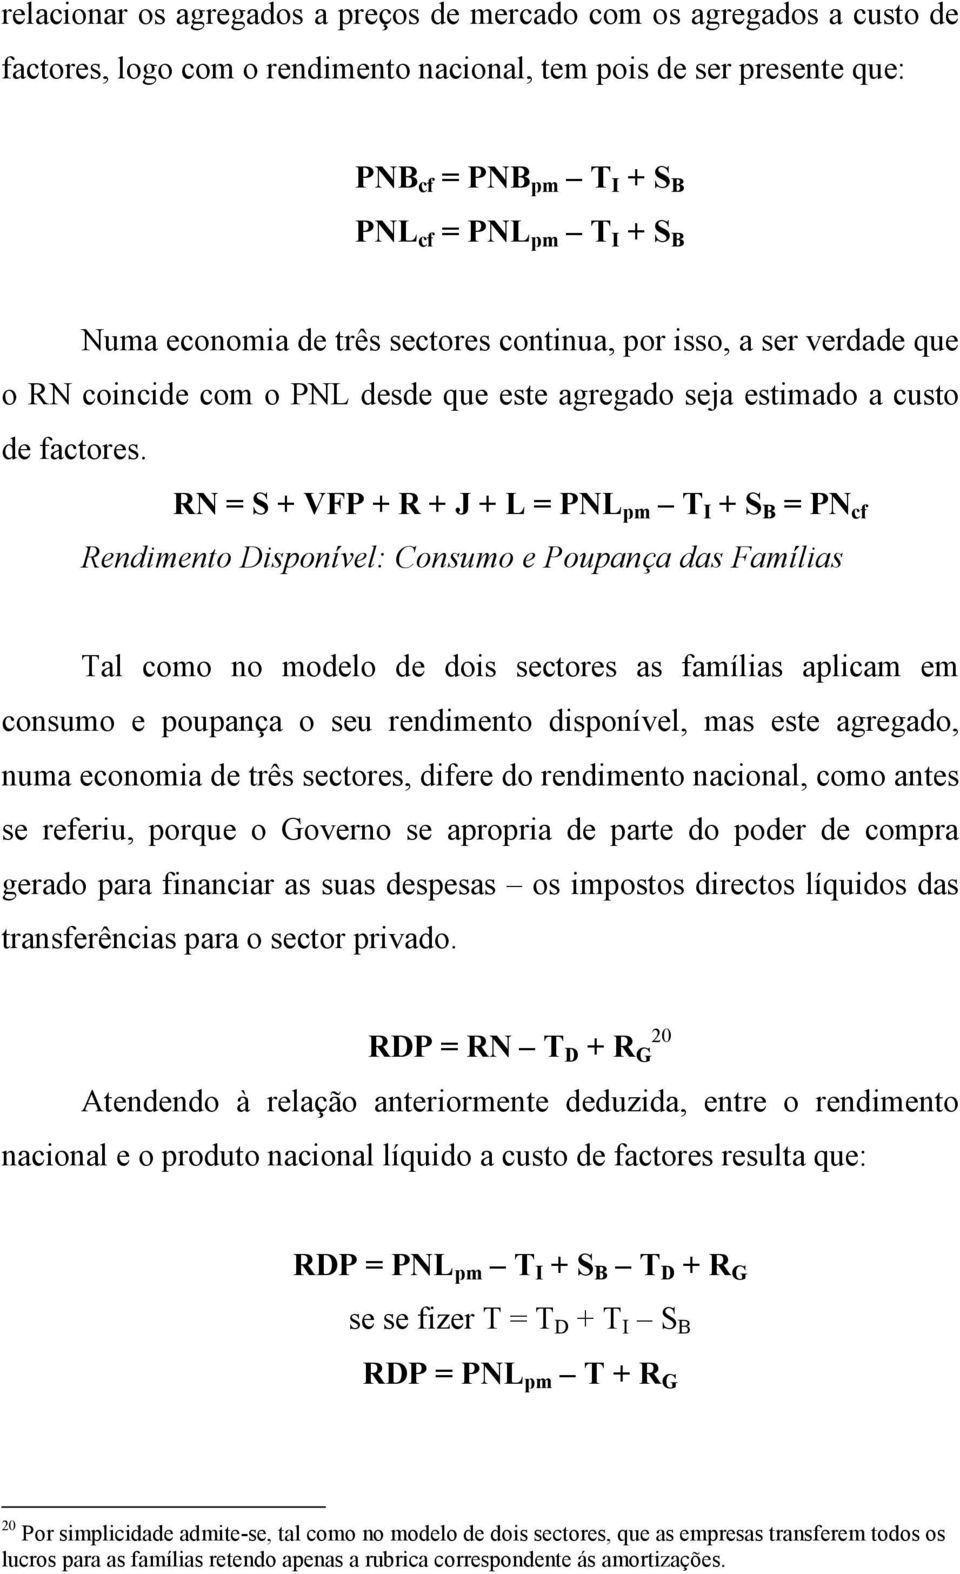 RN = S + VFP + R + J + L = PNL pm T I + S B = PN cf Rendimento Disponível: Consumo e Poupança das Famílias Tal como no modelo de dois sectores as famílias aplicam em consumo e poupança o seu